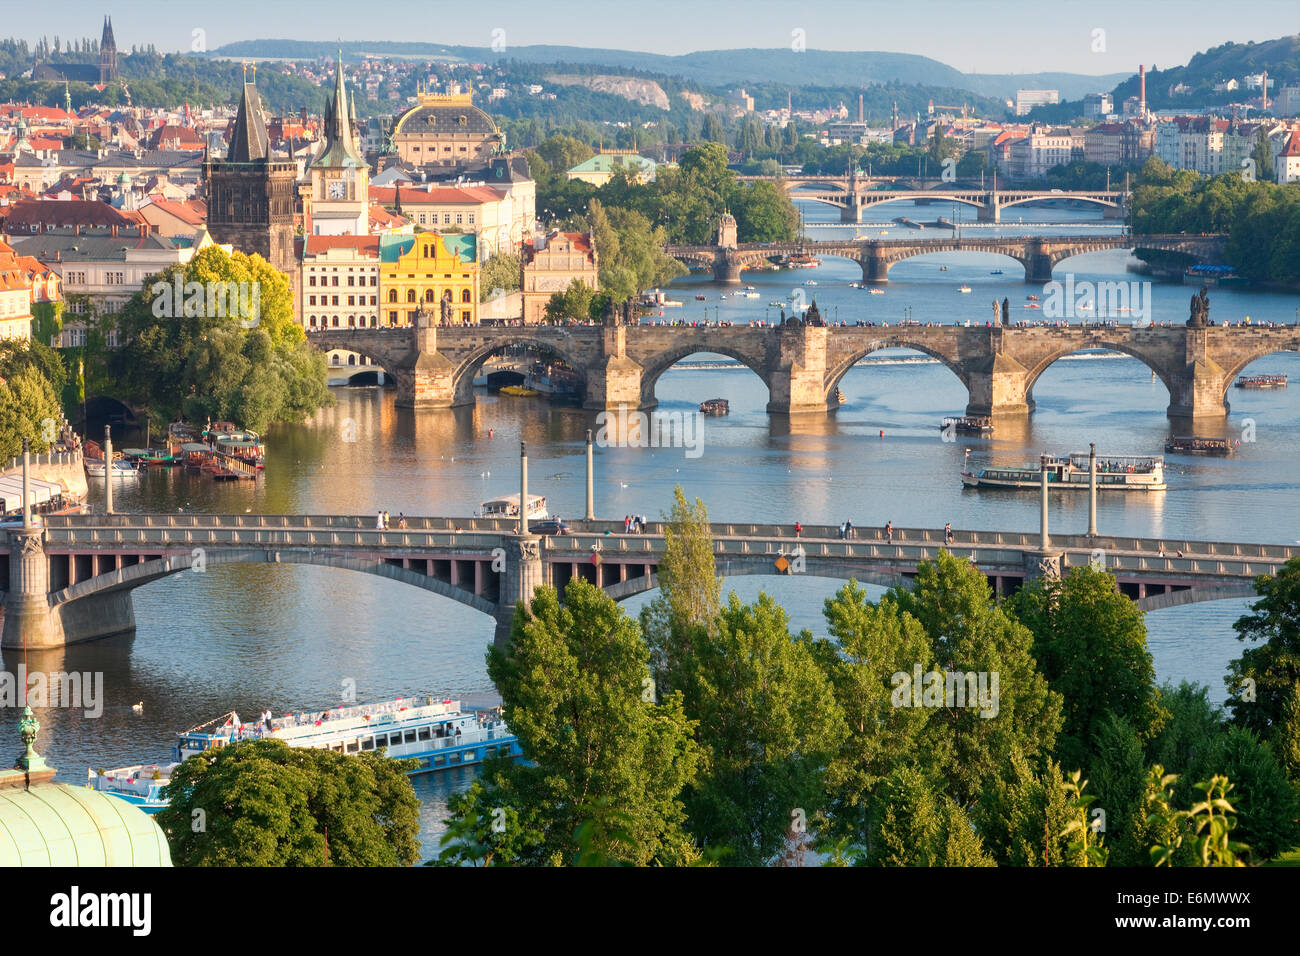 Tschechische Republik, Prag - Brücken über den Fluss Vltava und Bootsverkehr. Stockfoto